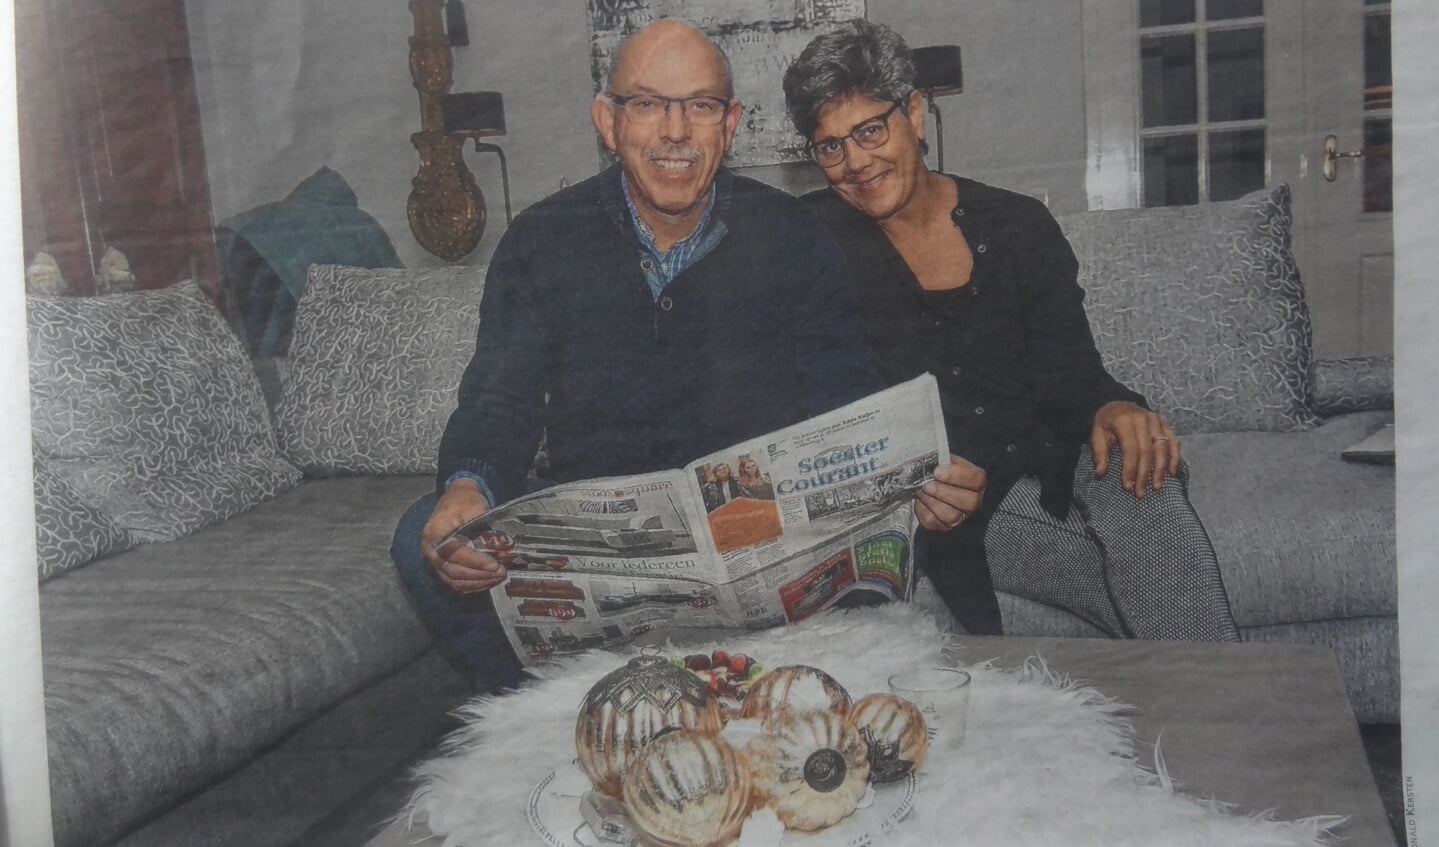 Samen met echtgenote Carla, eindelijk even op de bank, met de Soester Courant die hij in 2017 verkocht.